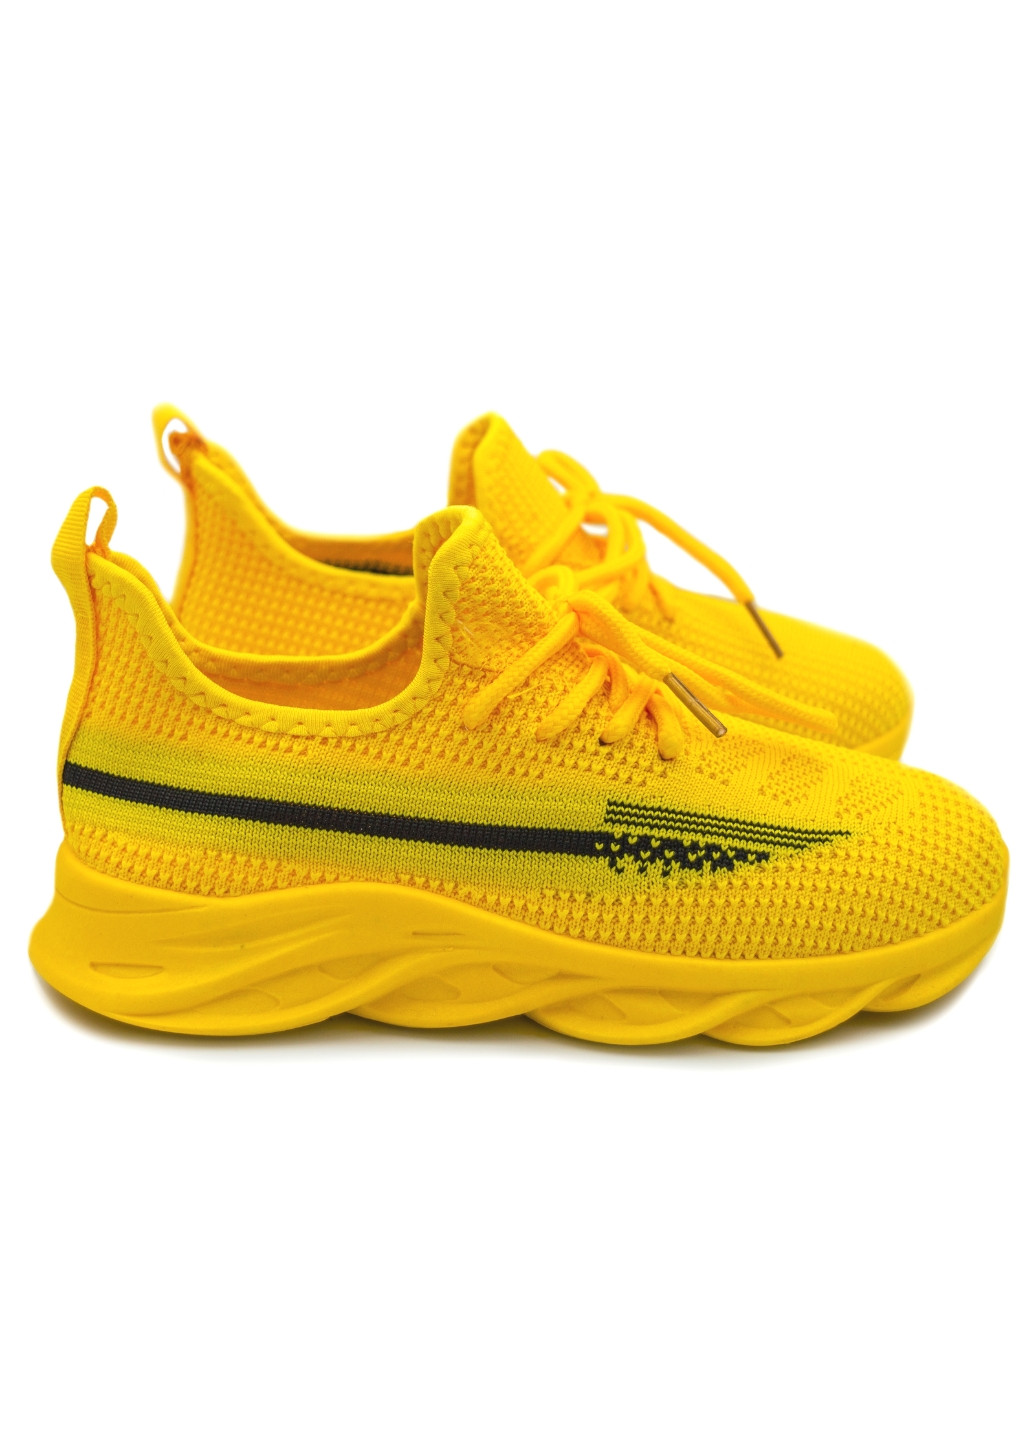 Желтые всесезонные детские кроссовки для девочки Lilin Shoes